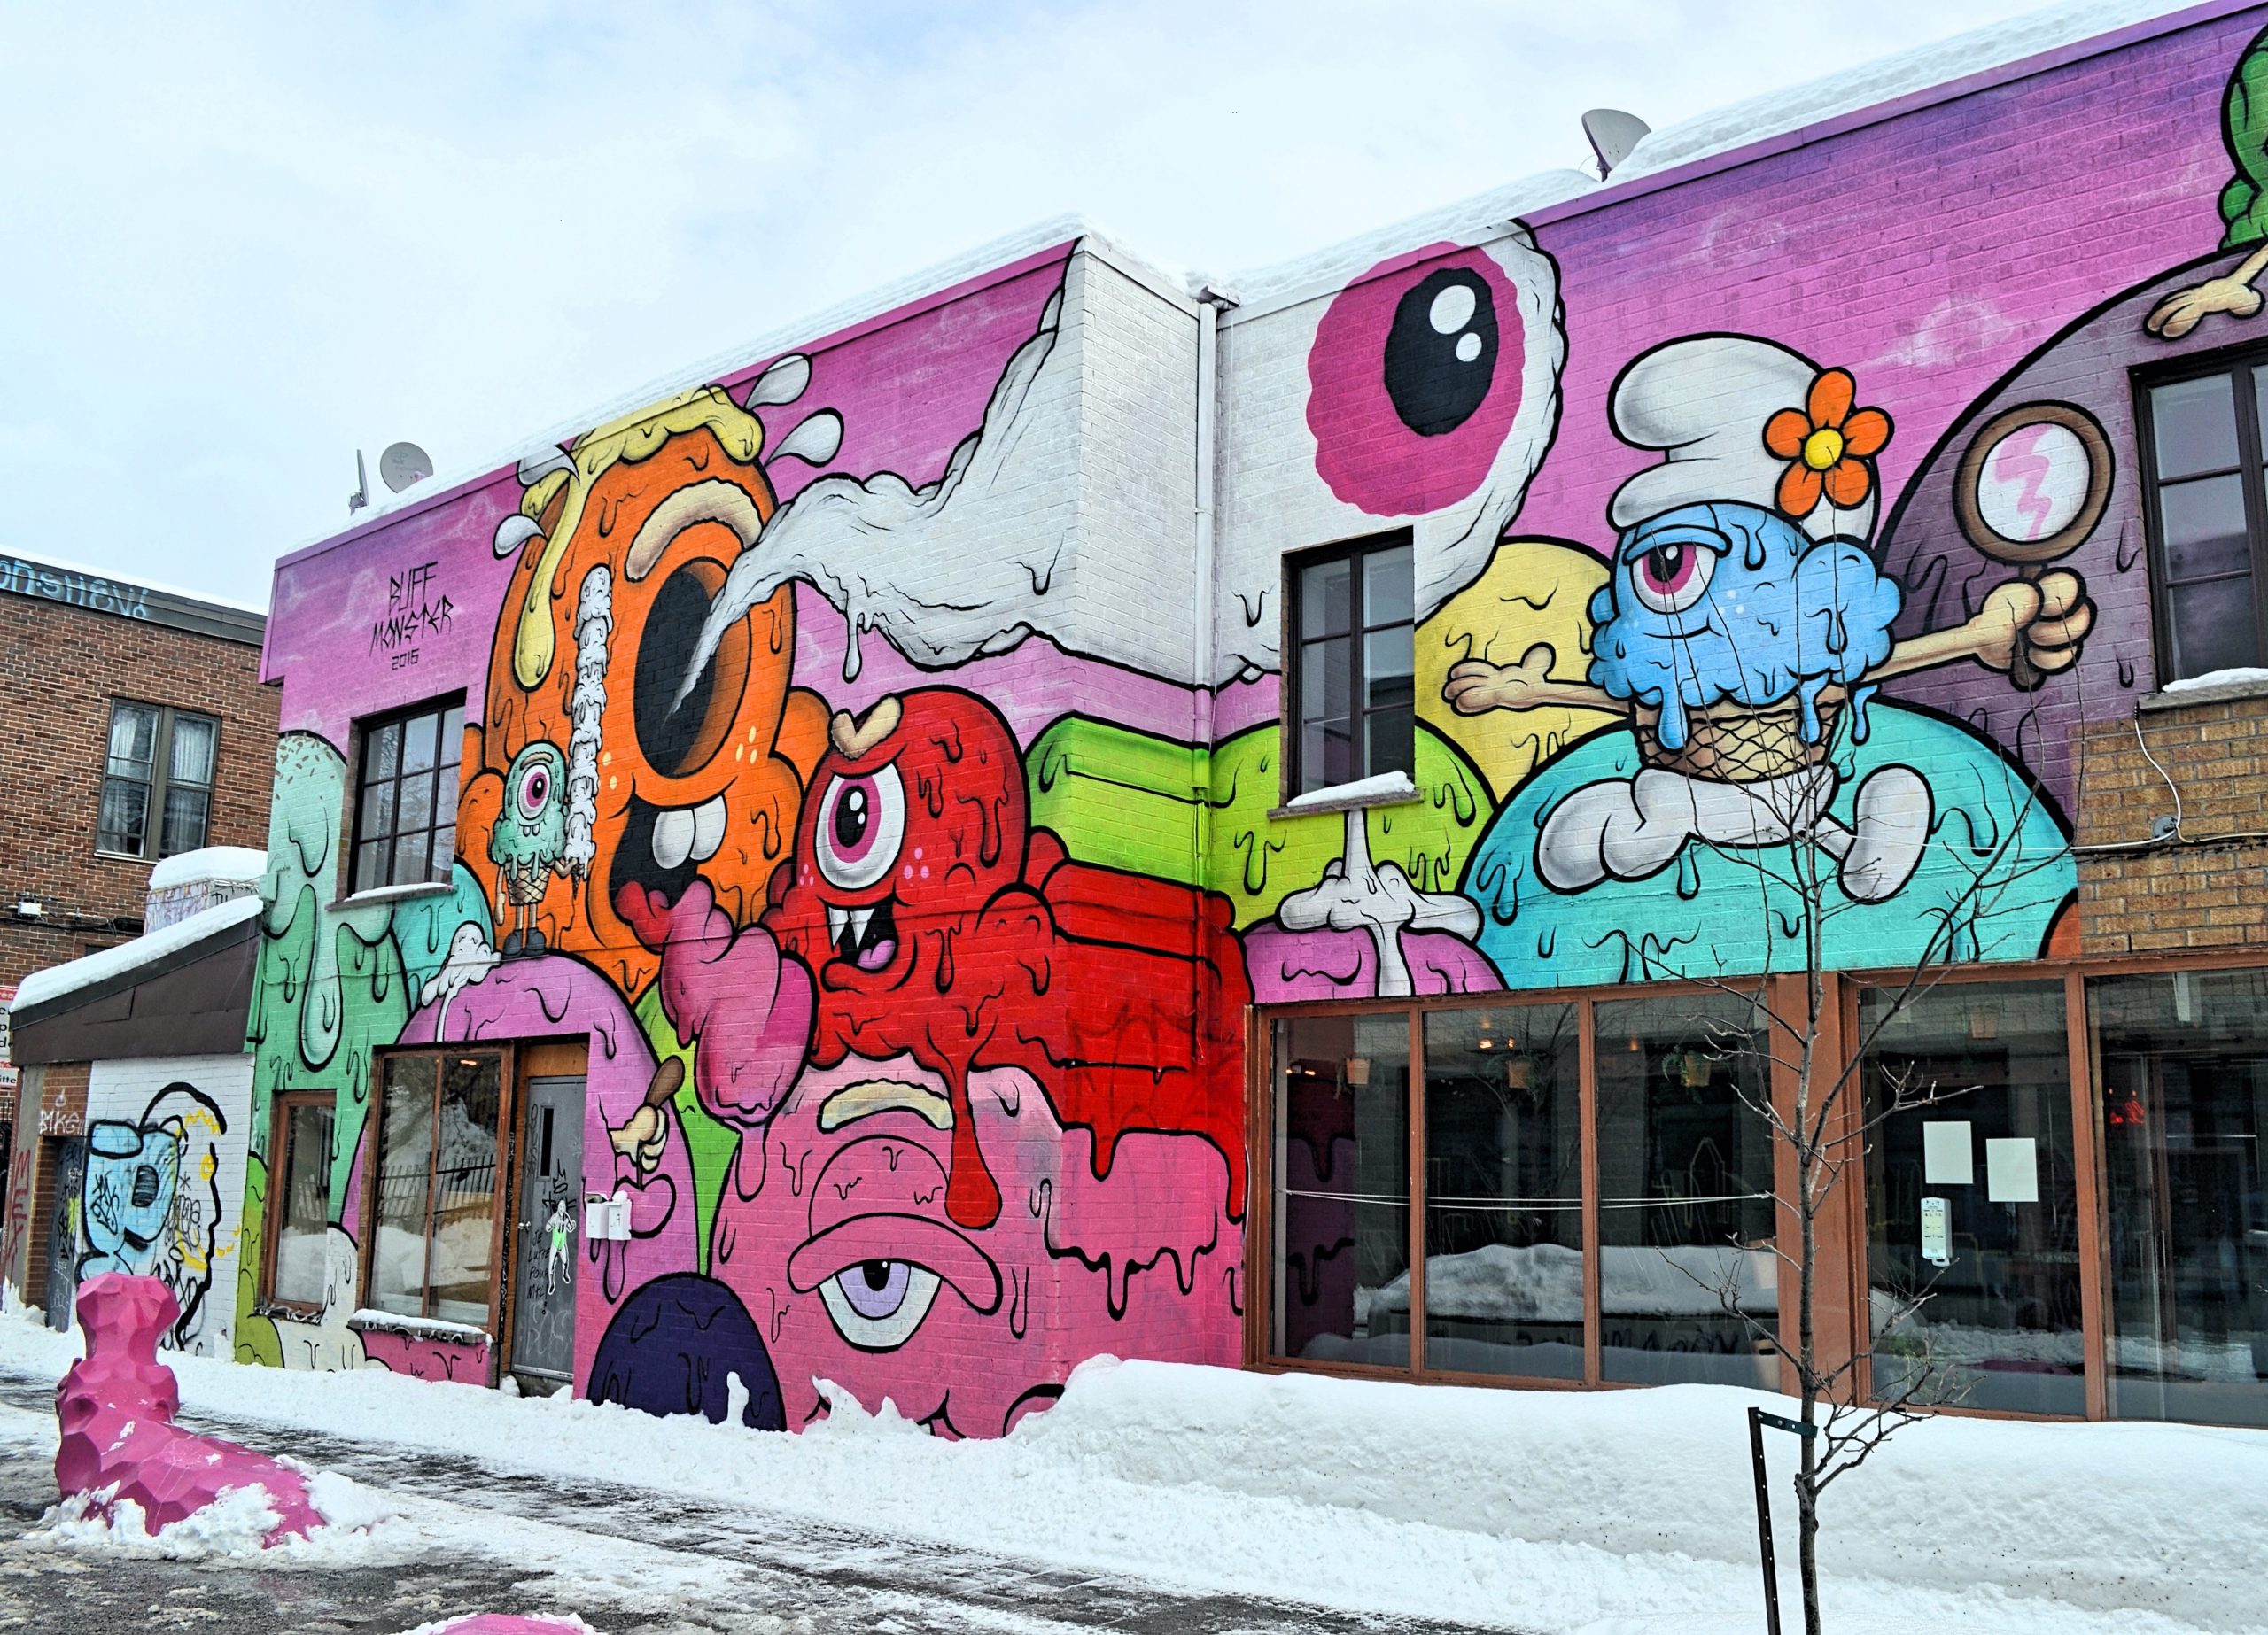 Montreal's street murals